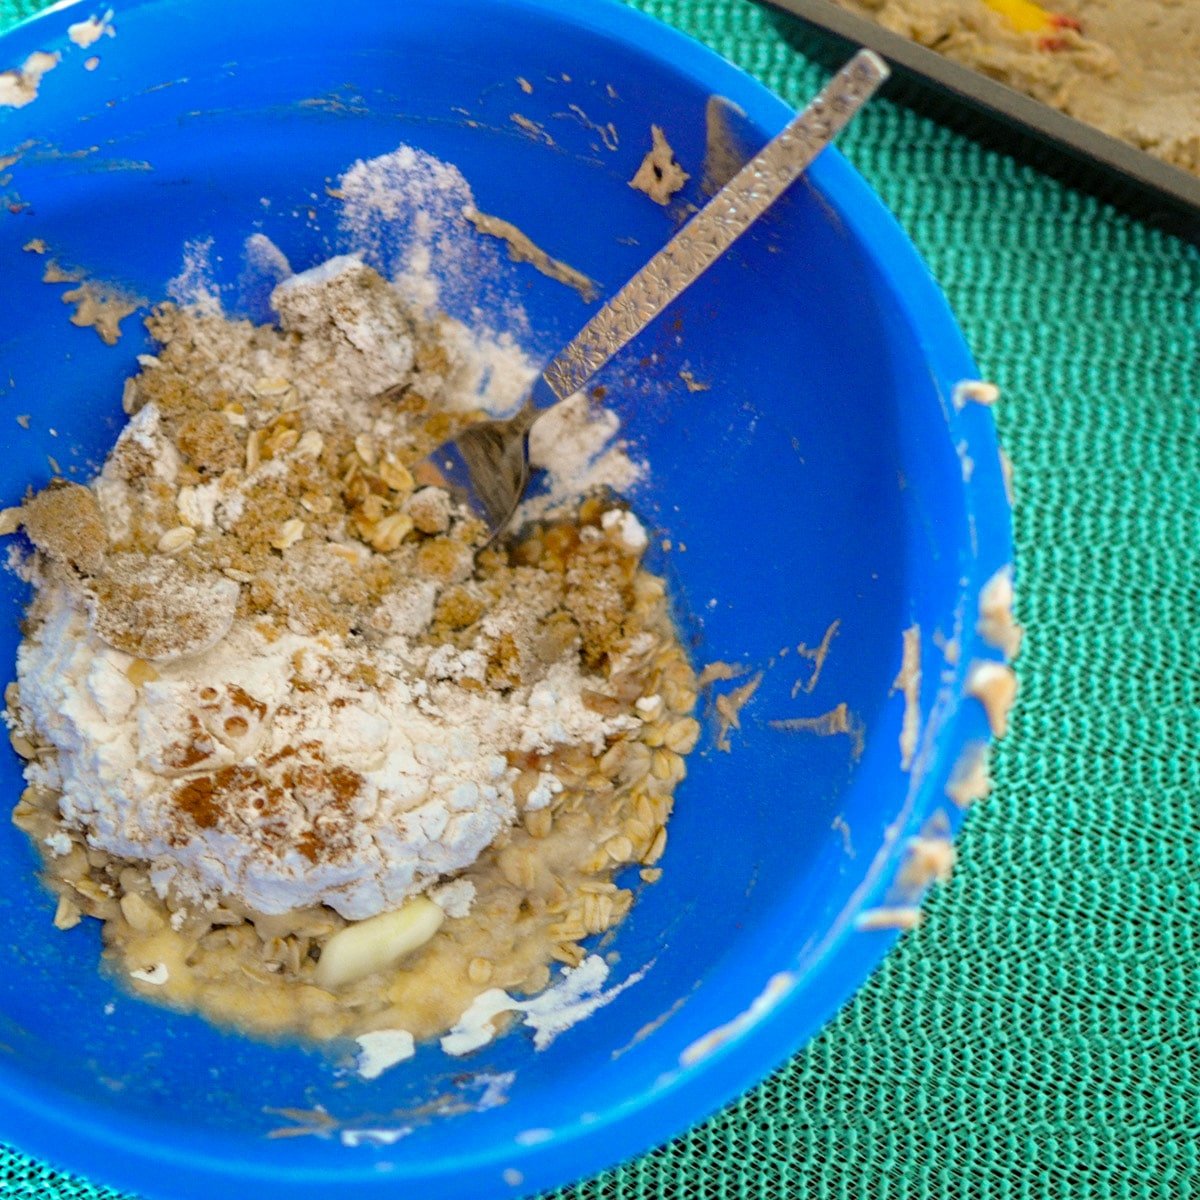 brown sugar, flour, oats, cinnamon, butter in a blue bowl